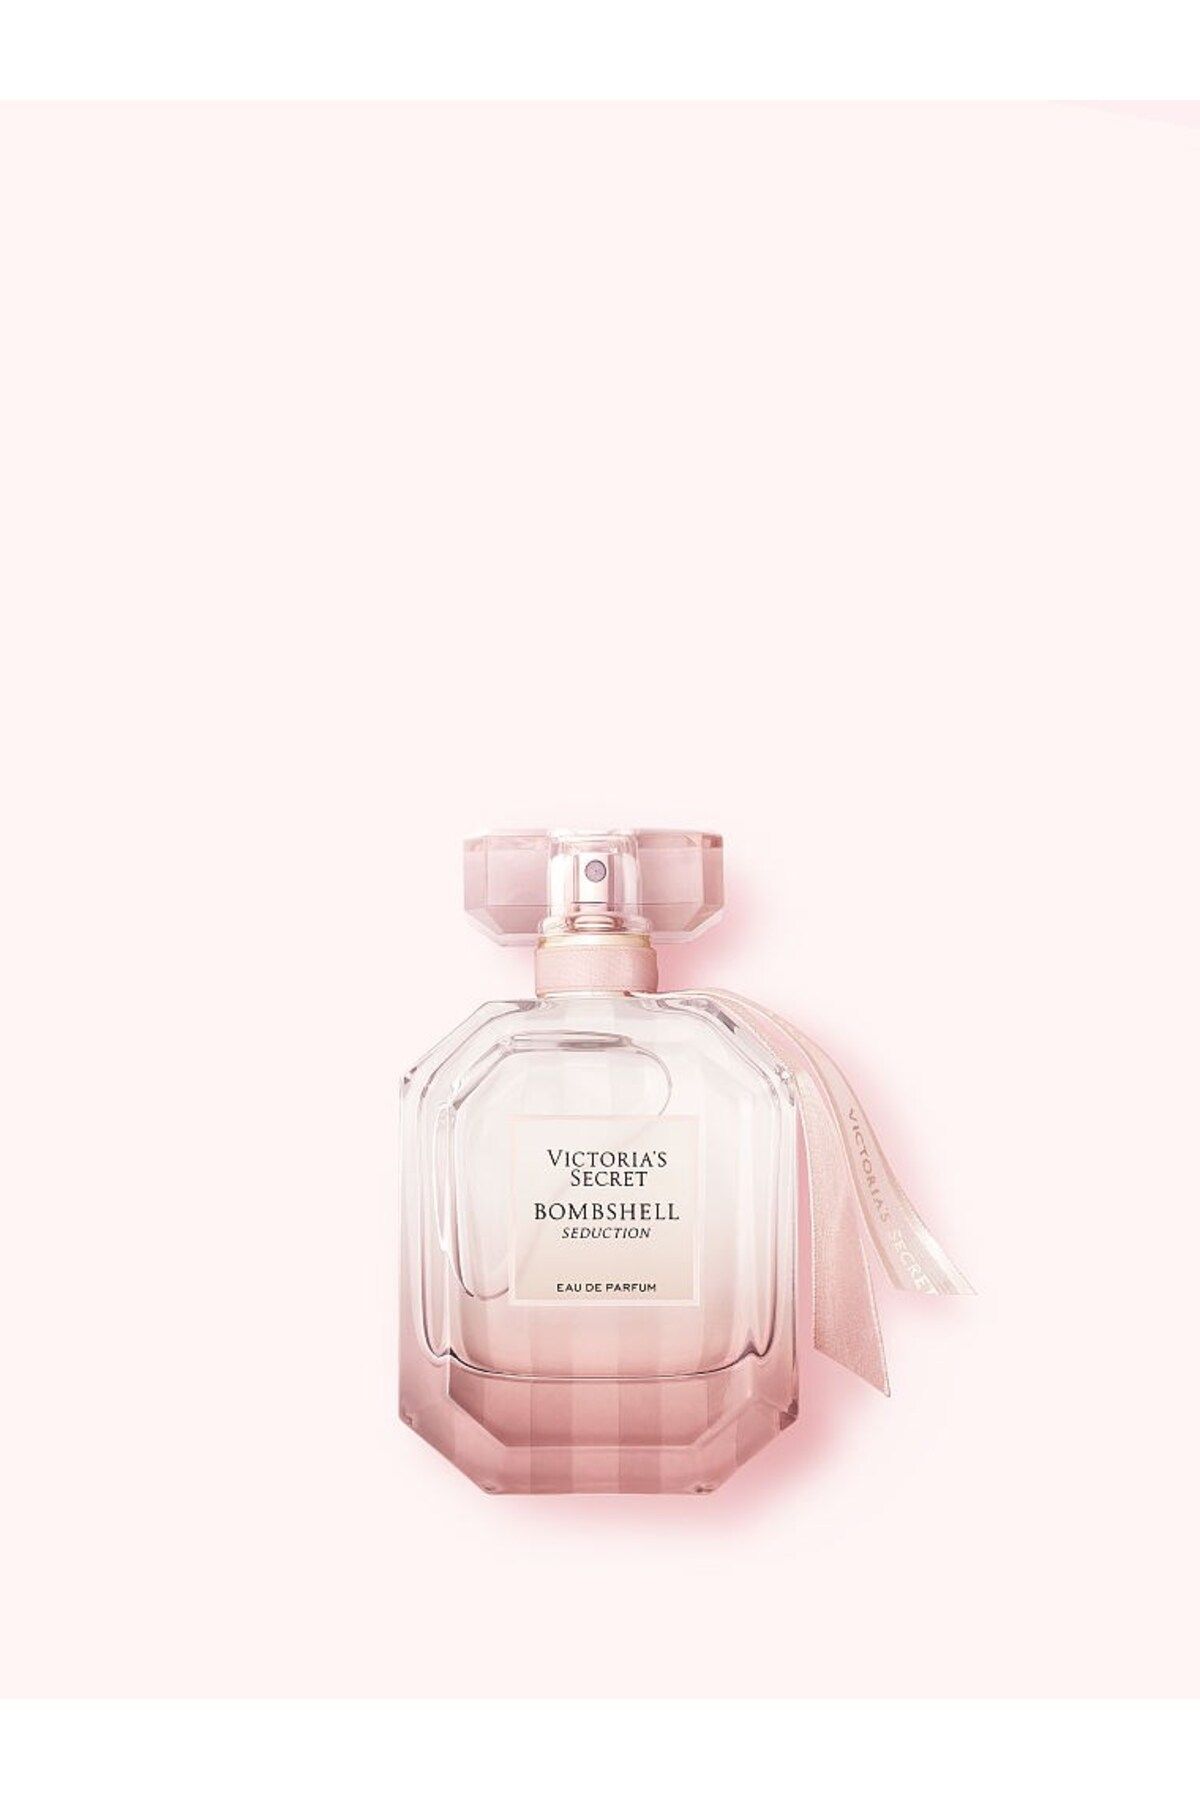 Victoria's Secret Bombshell Seduction Eau De Parfum 50 ml